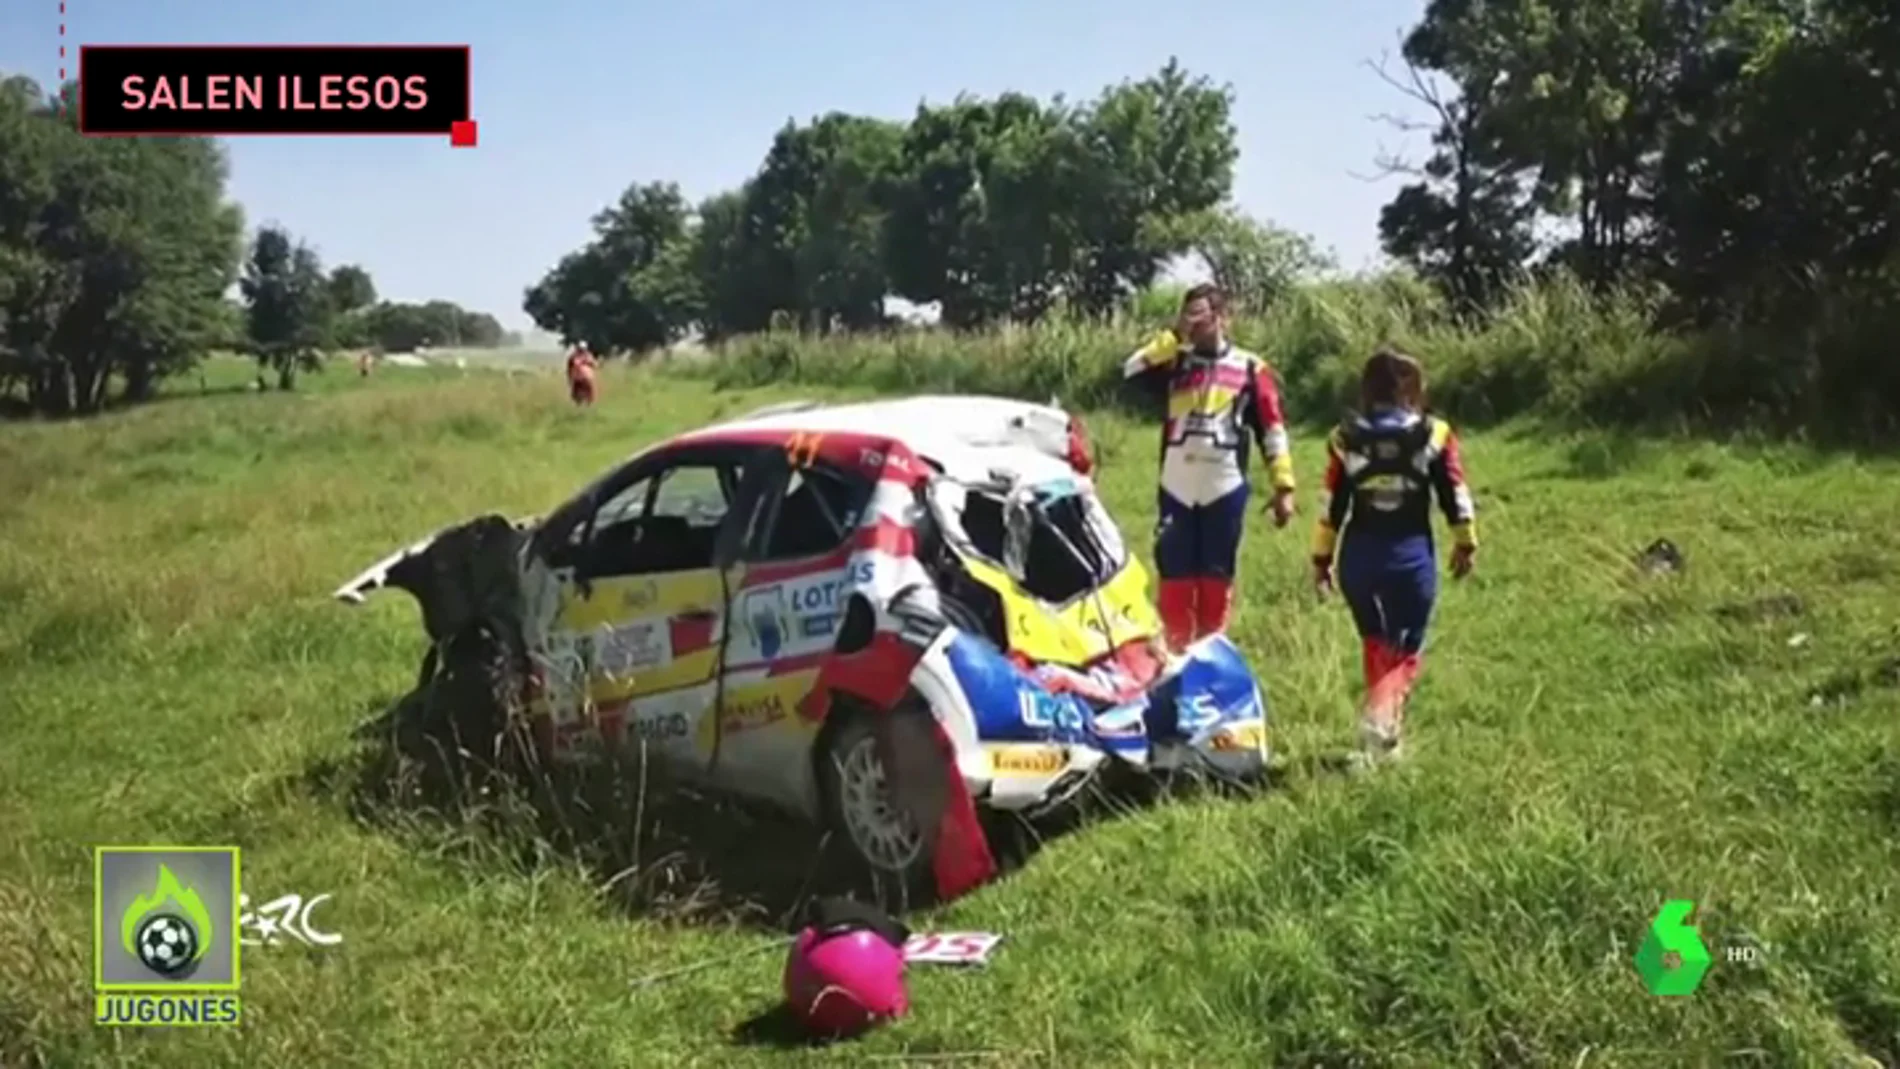 "": Efrén Llarena relata cómo fue su grave accidente en el rally de Polonia